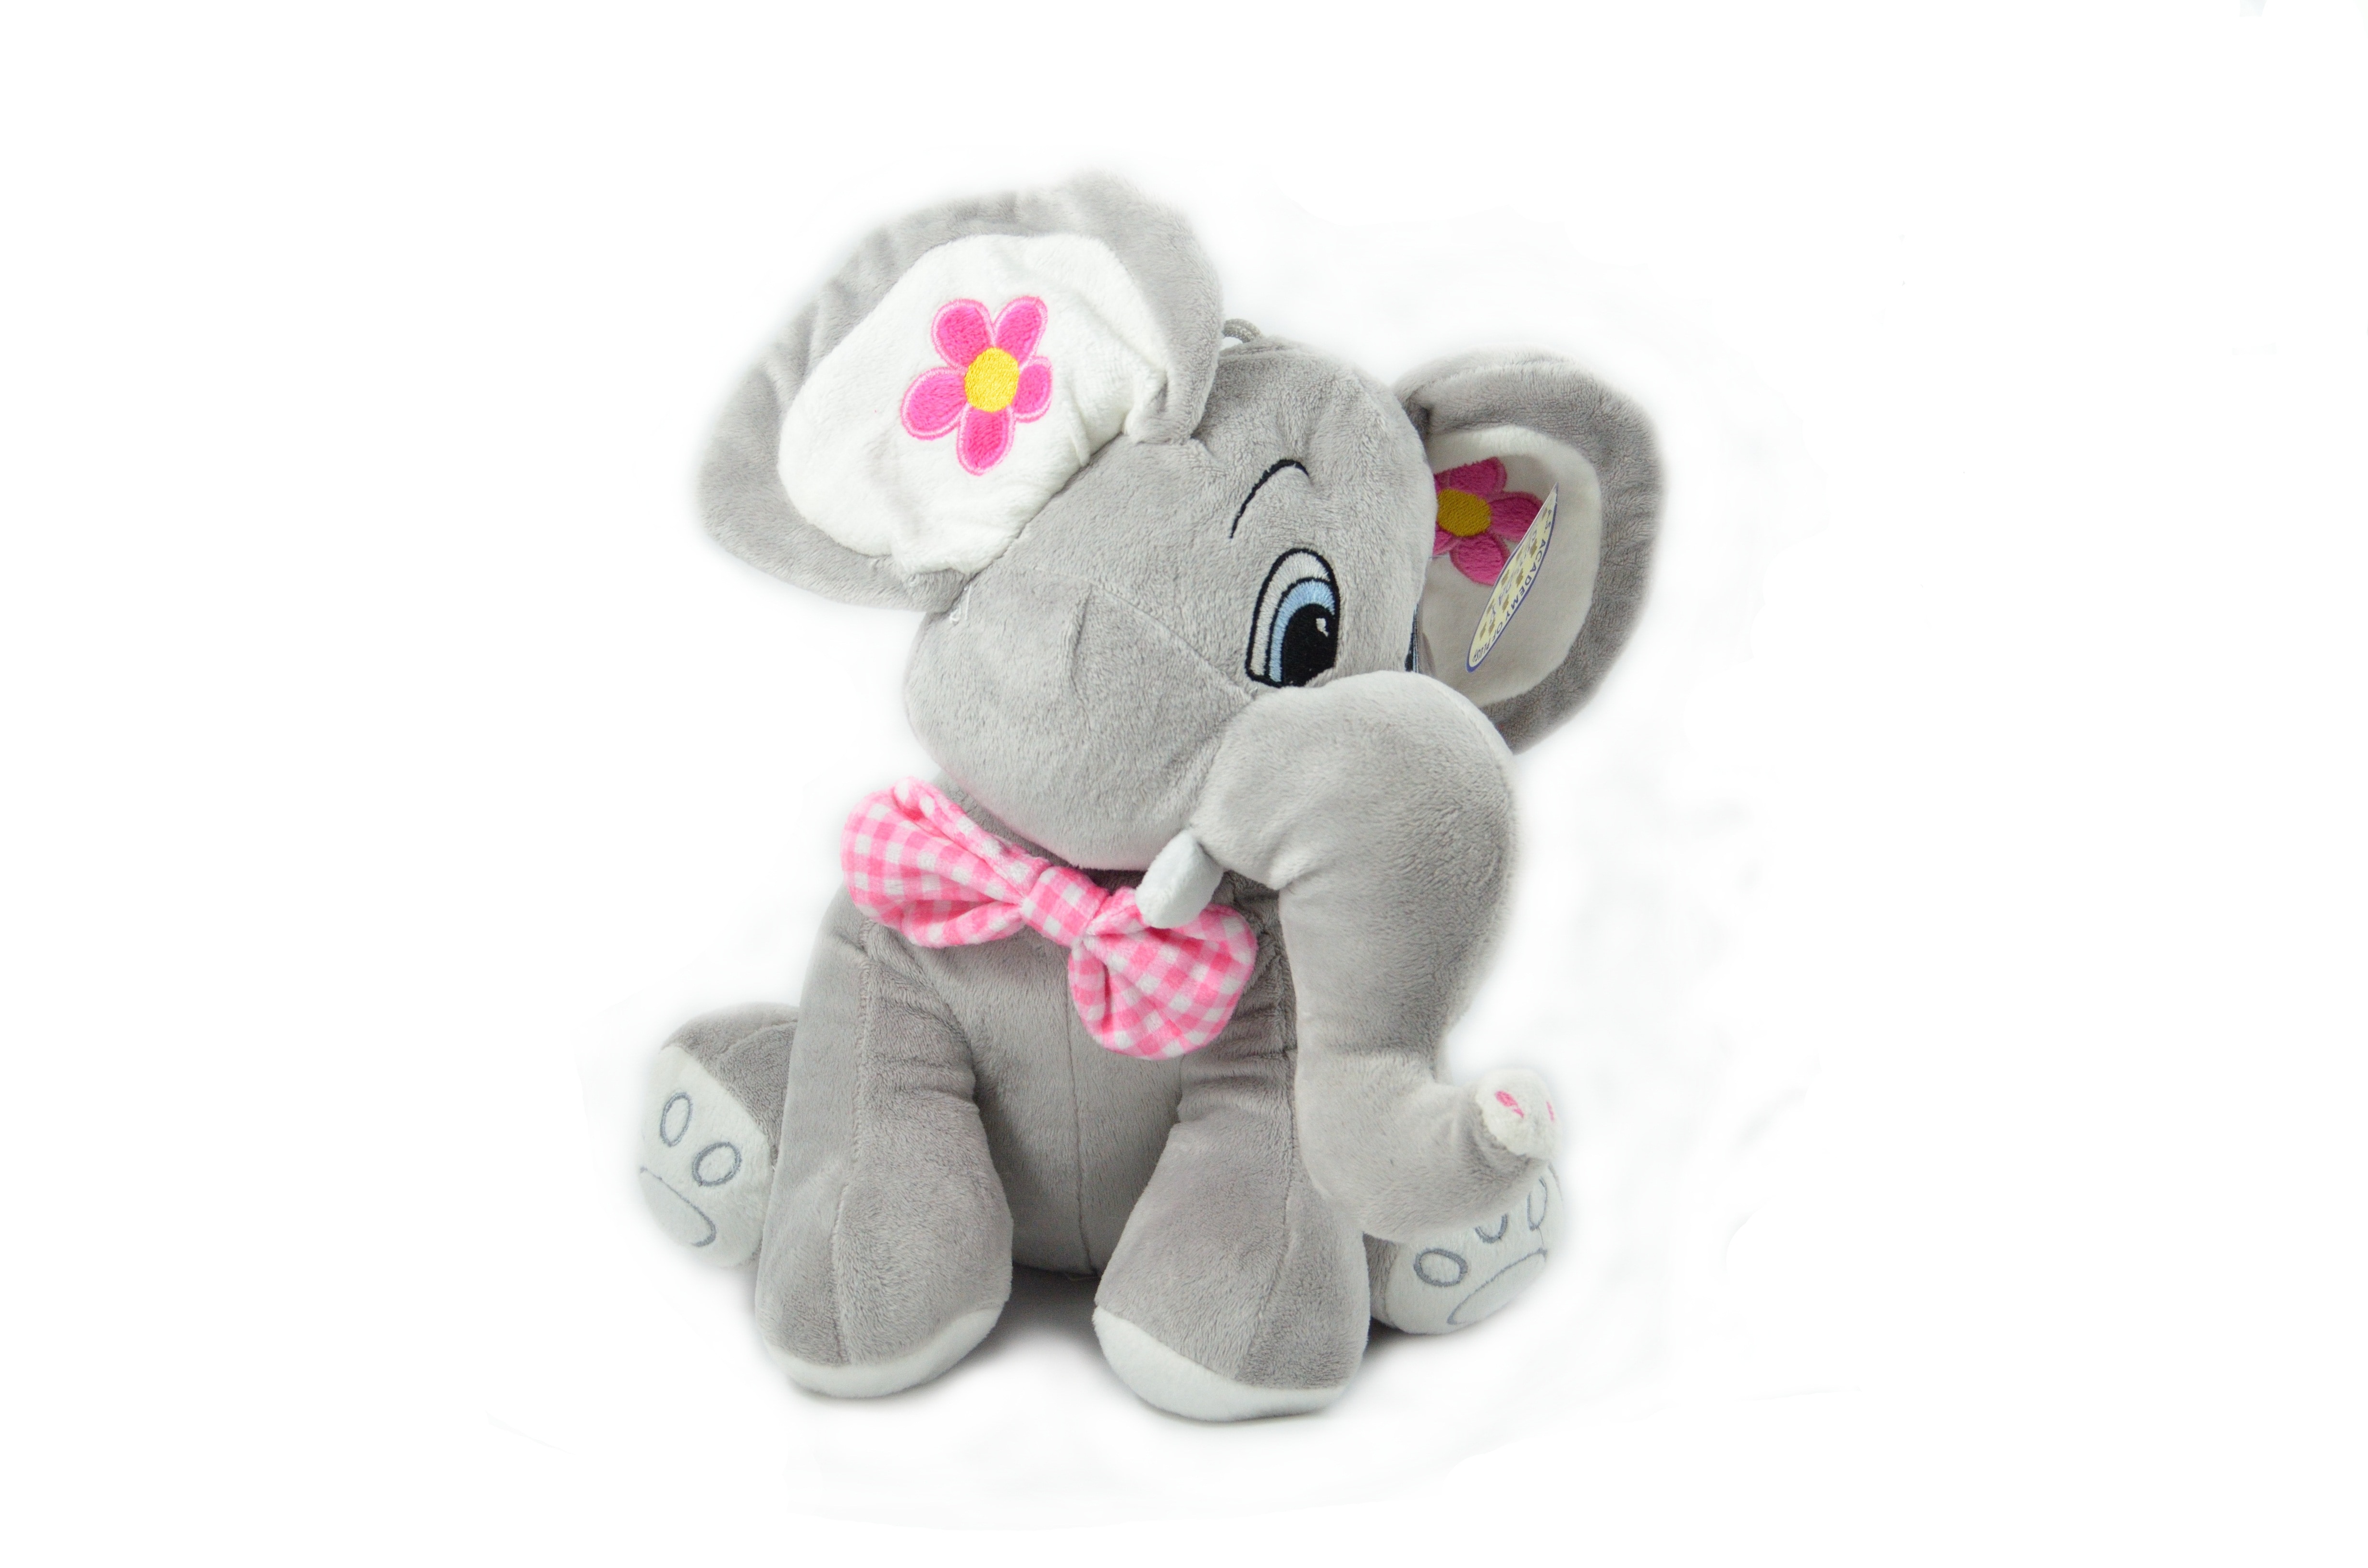 elephant plush toy